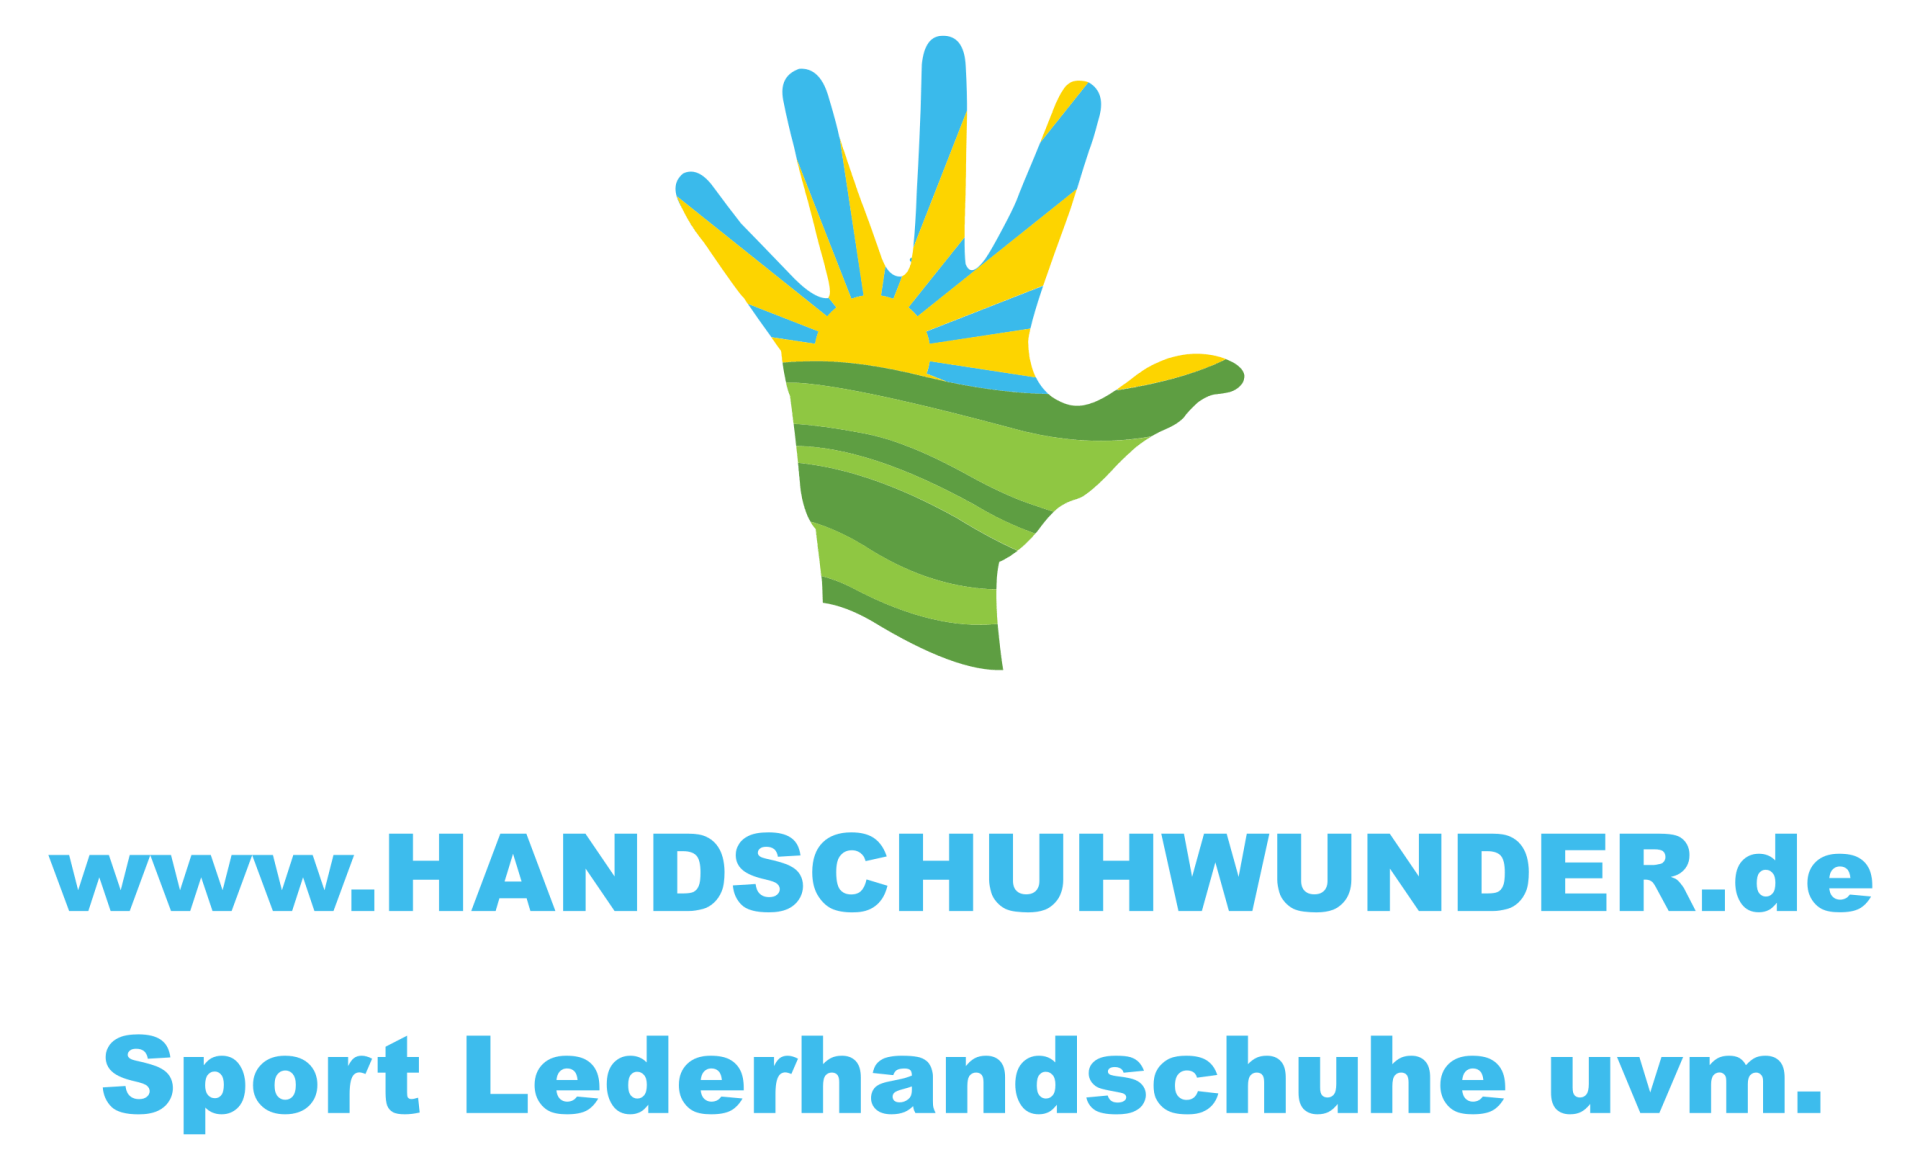 www.handschuhwunder.de